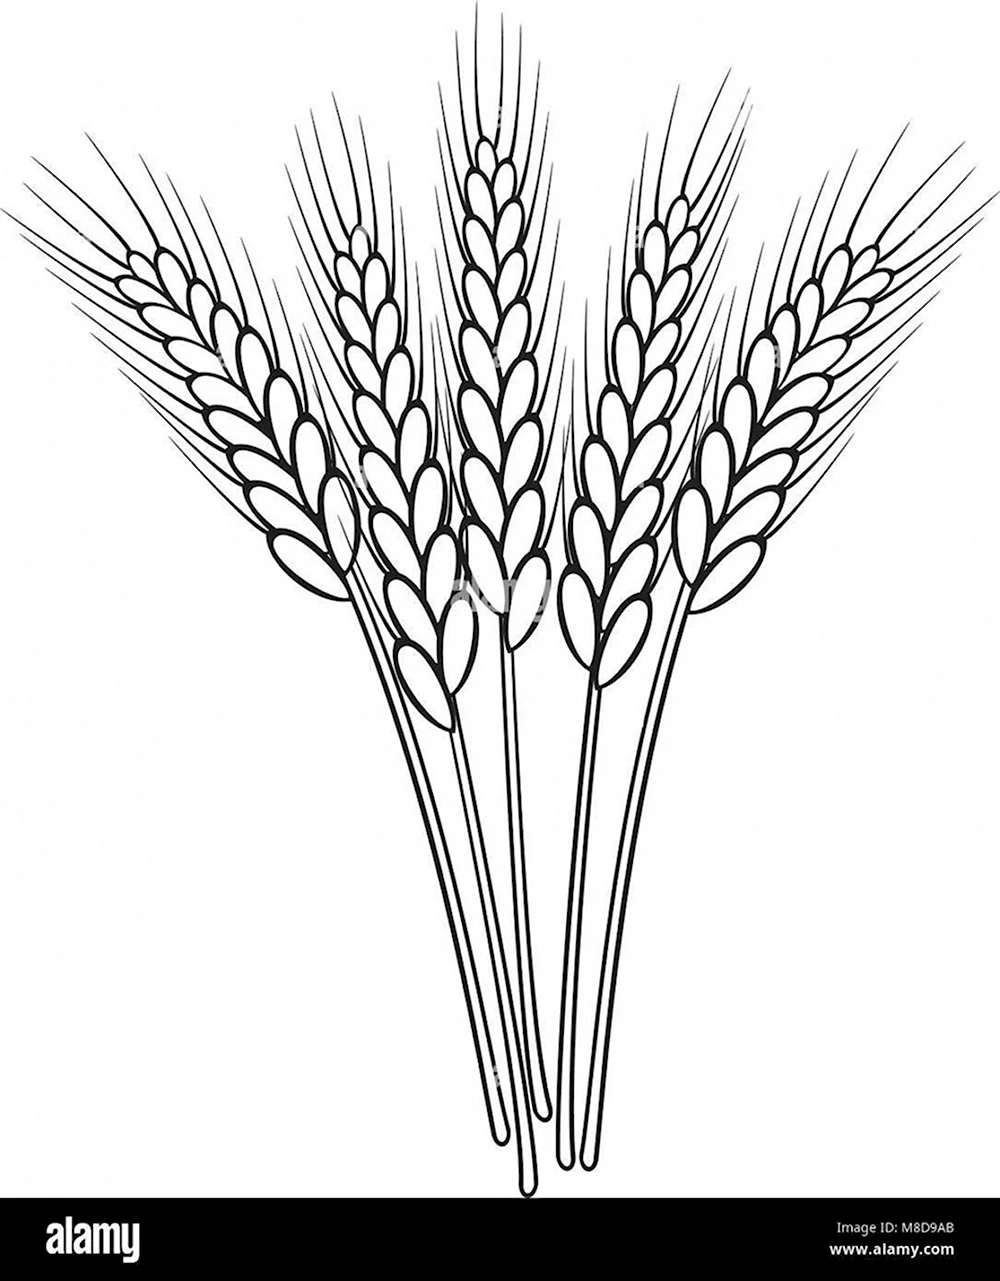 Раскраска колосок пшеницы для детей